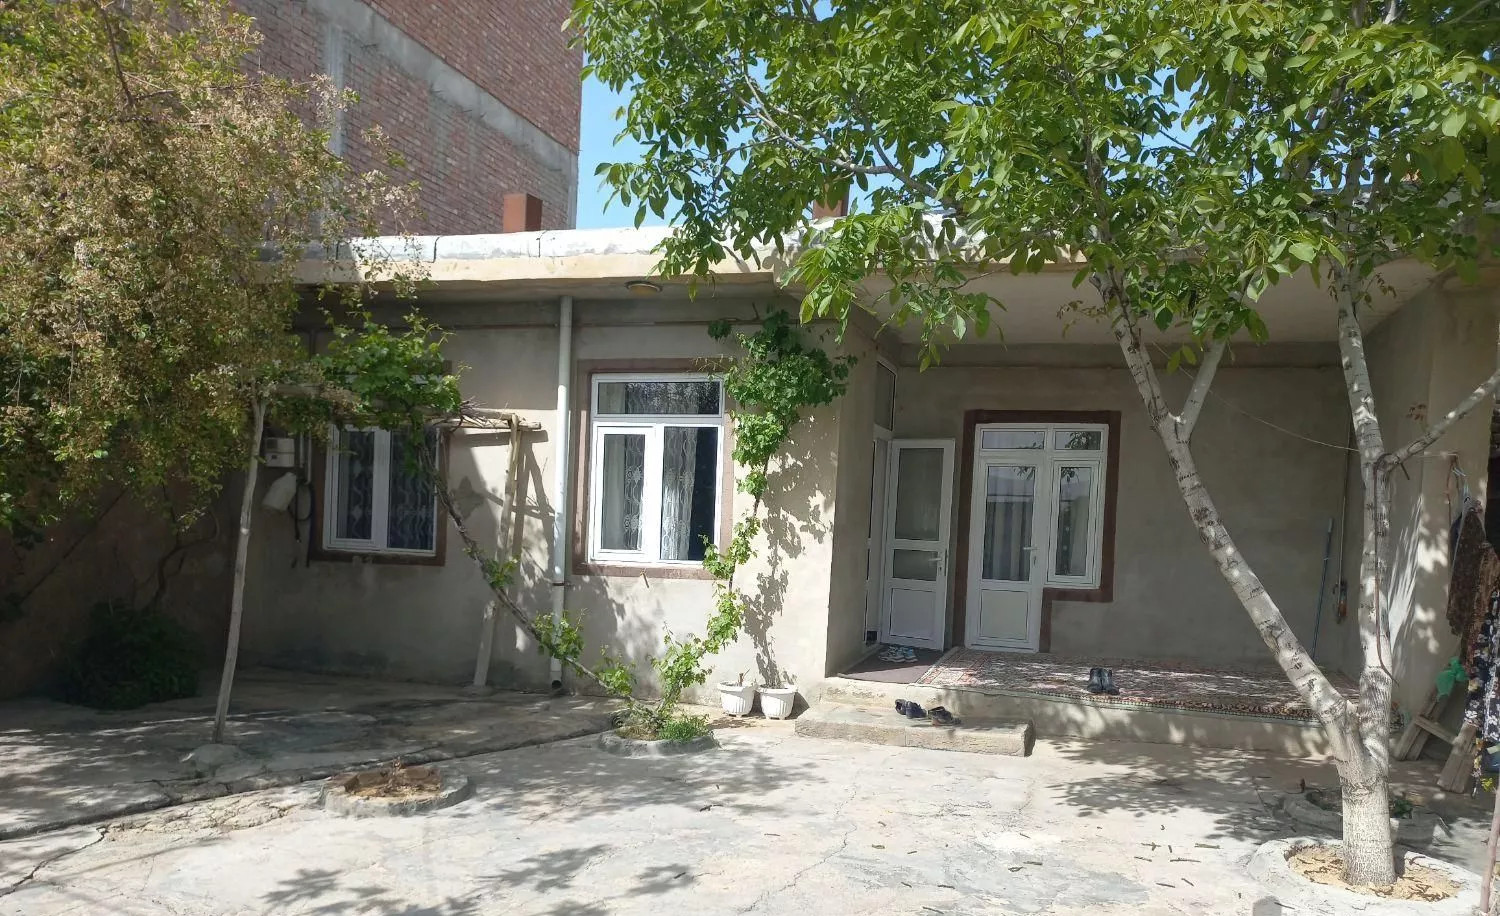 خانه مسکونی در روستای اگریقاش روبه خیابان